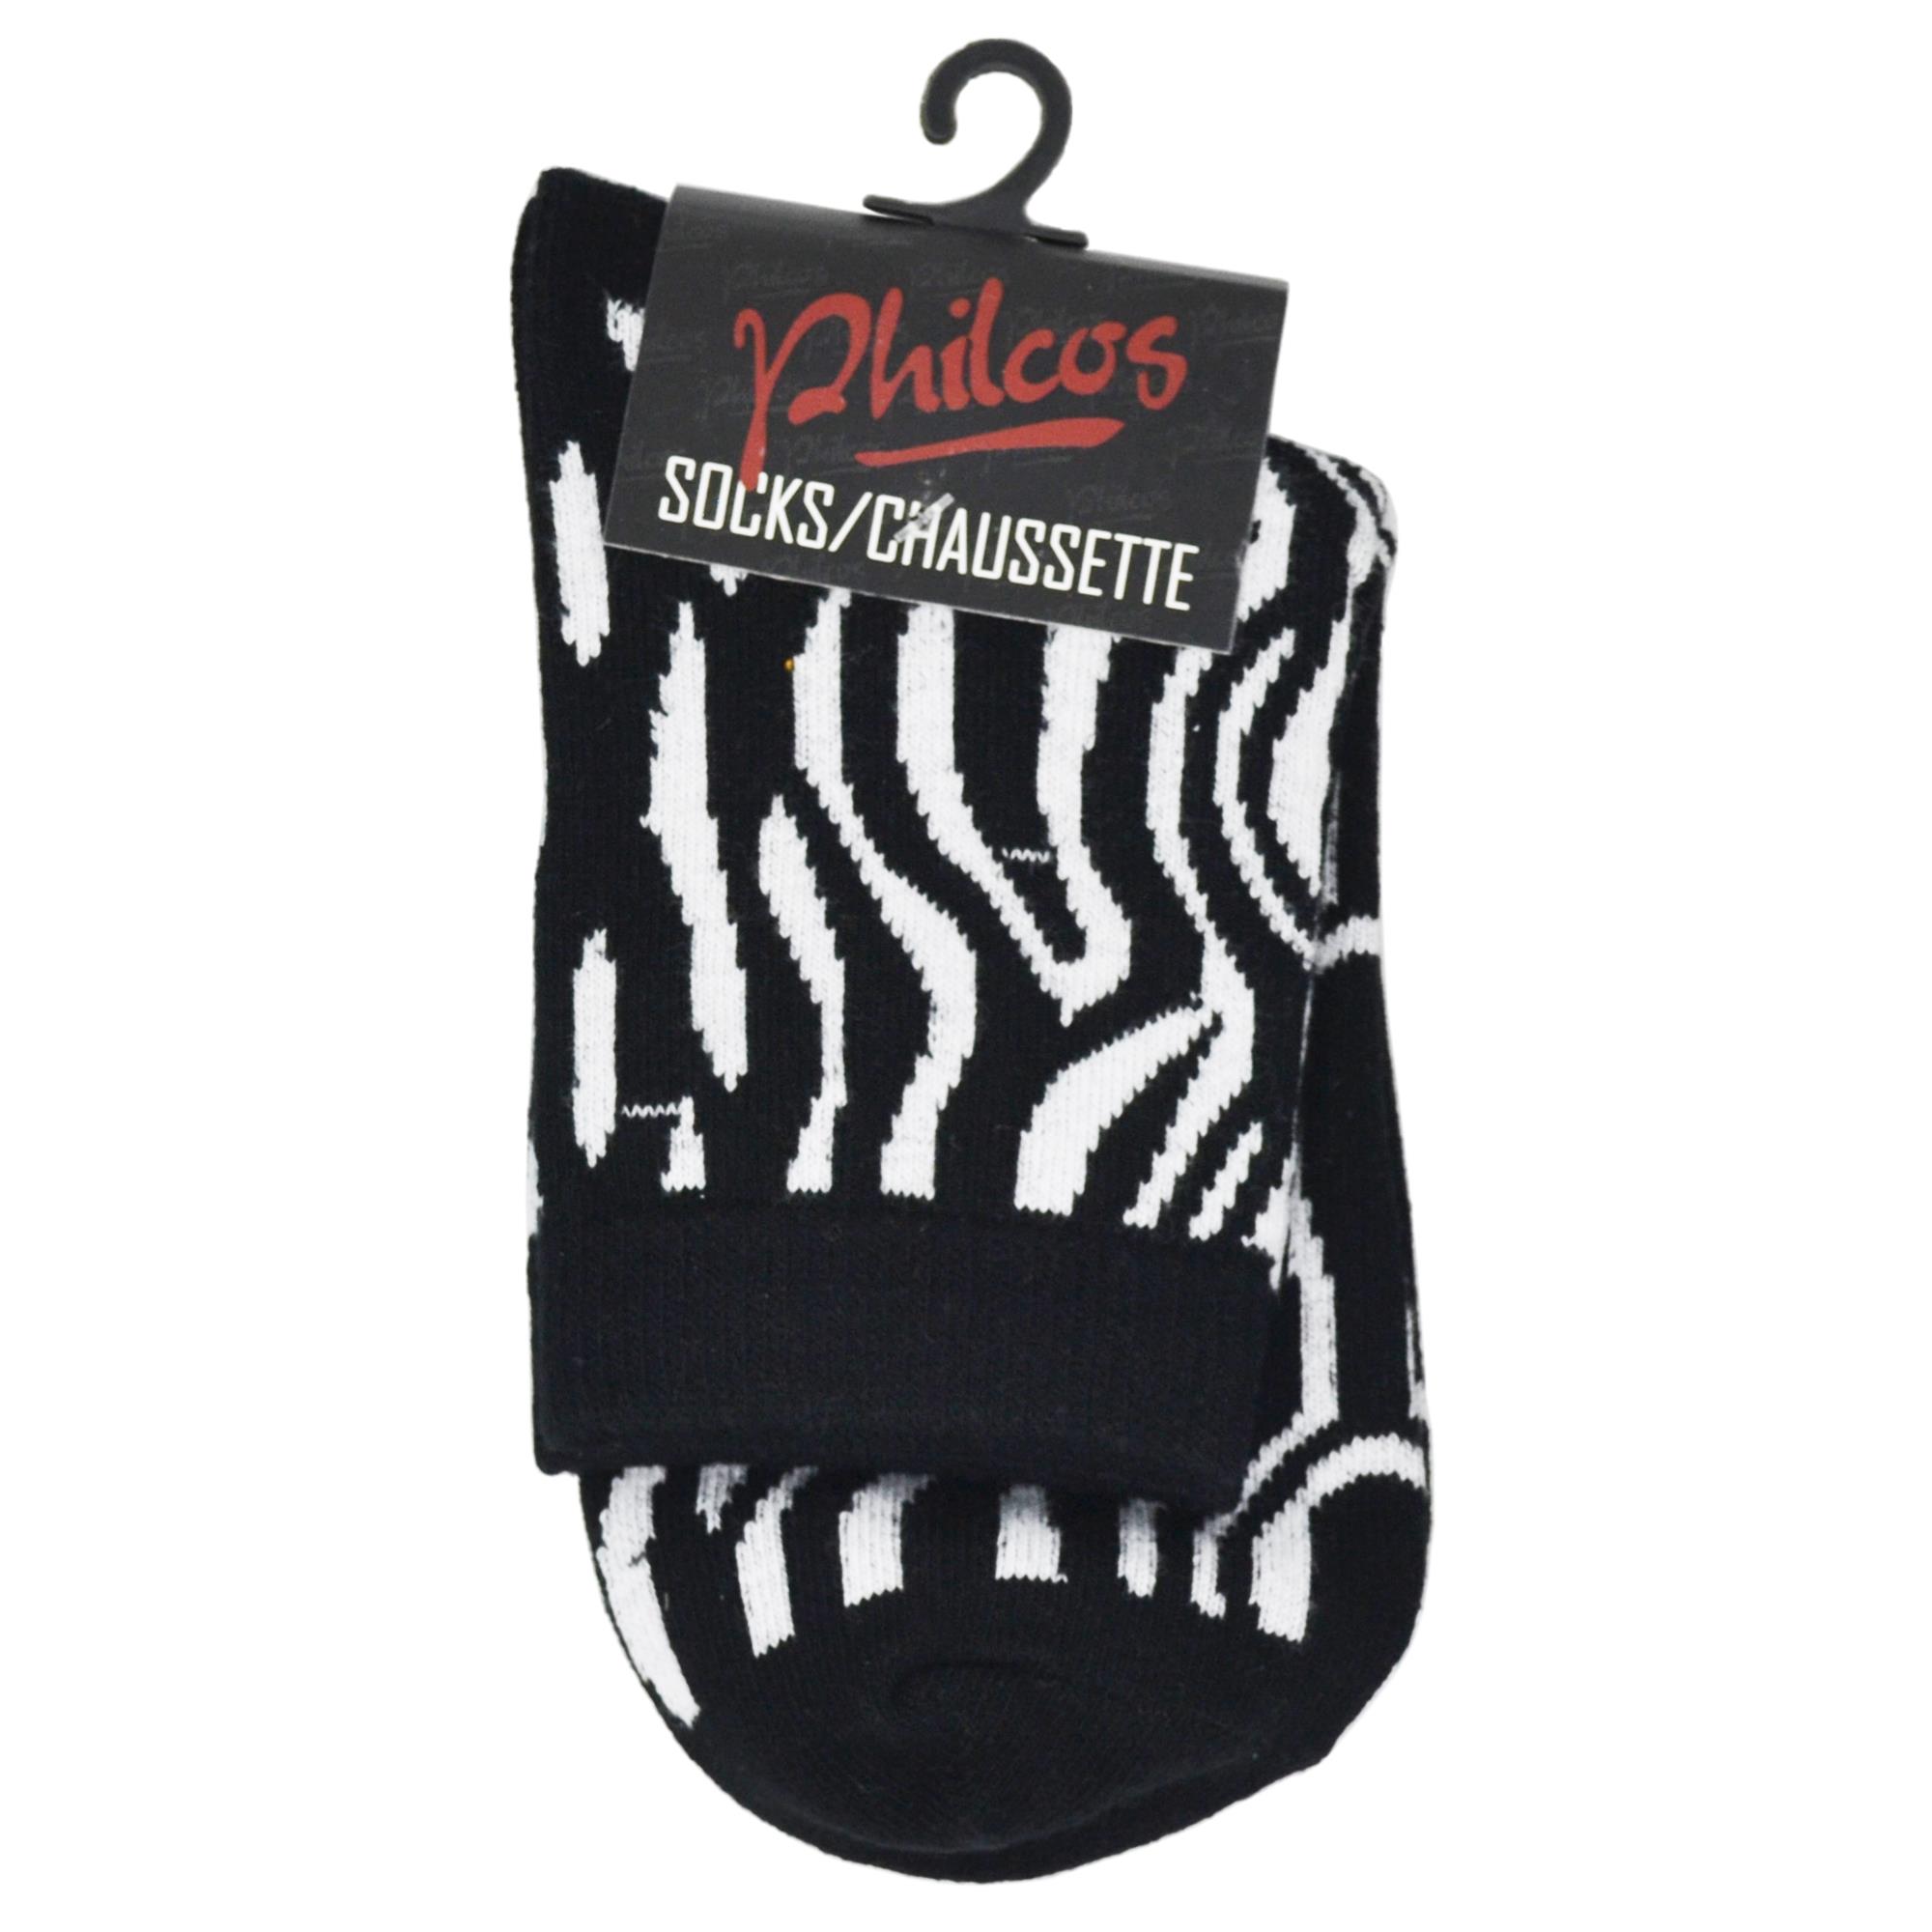 Zebra Socks